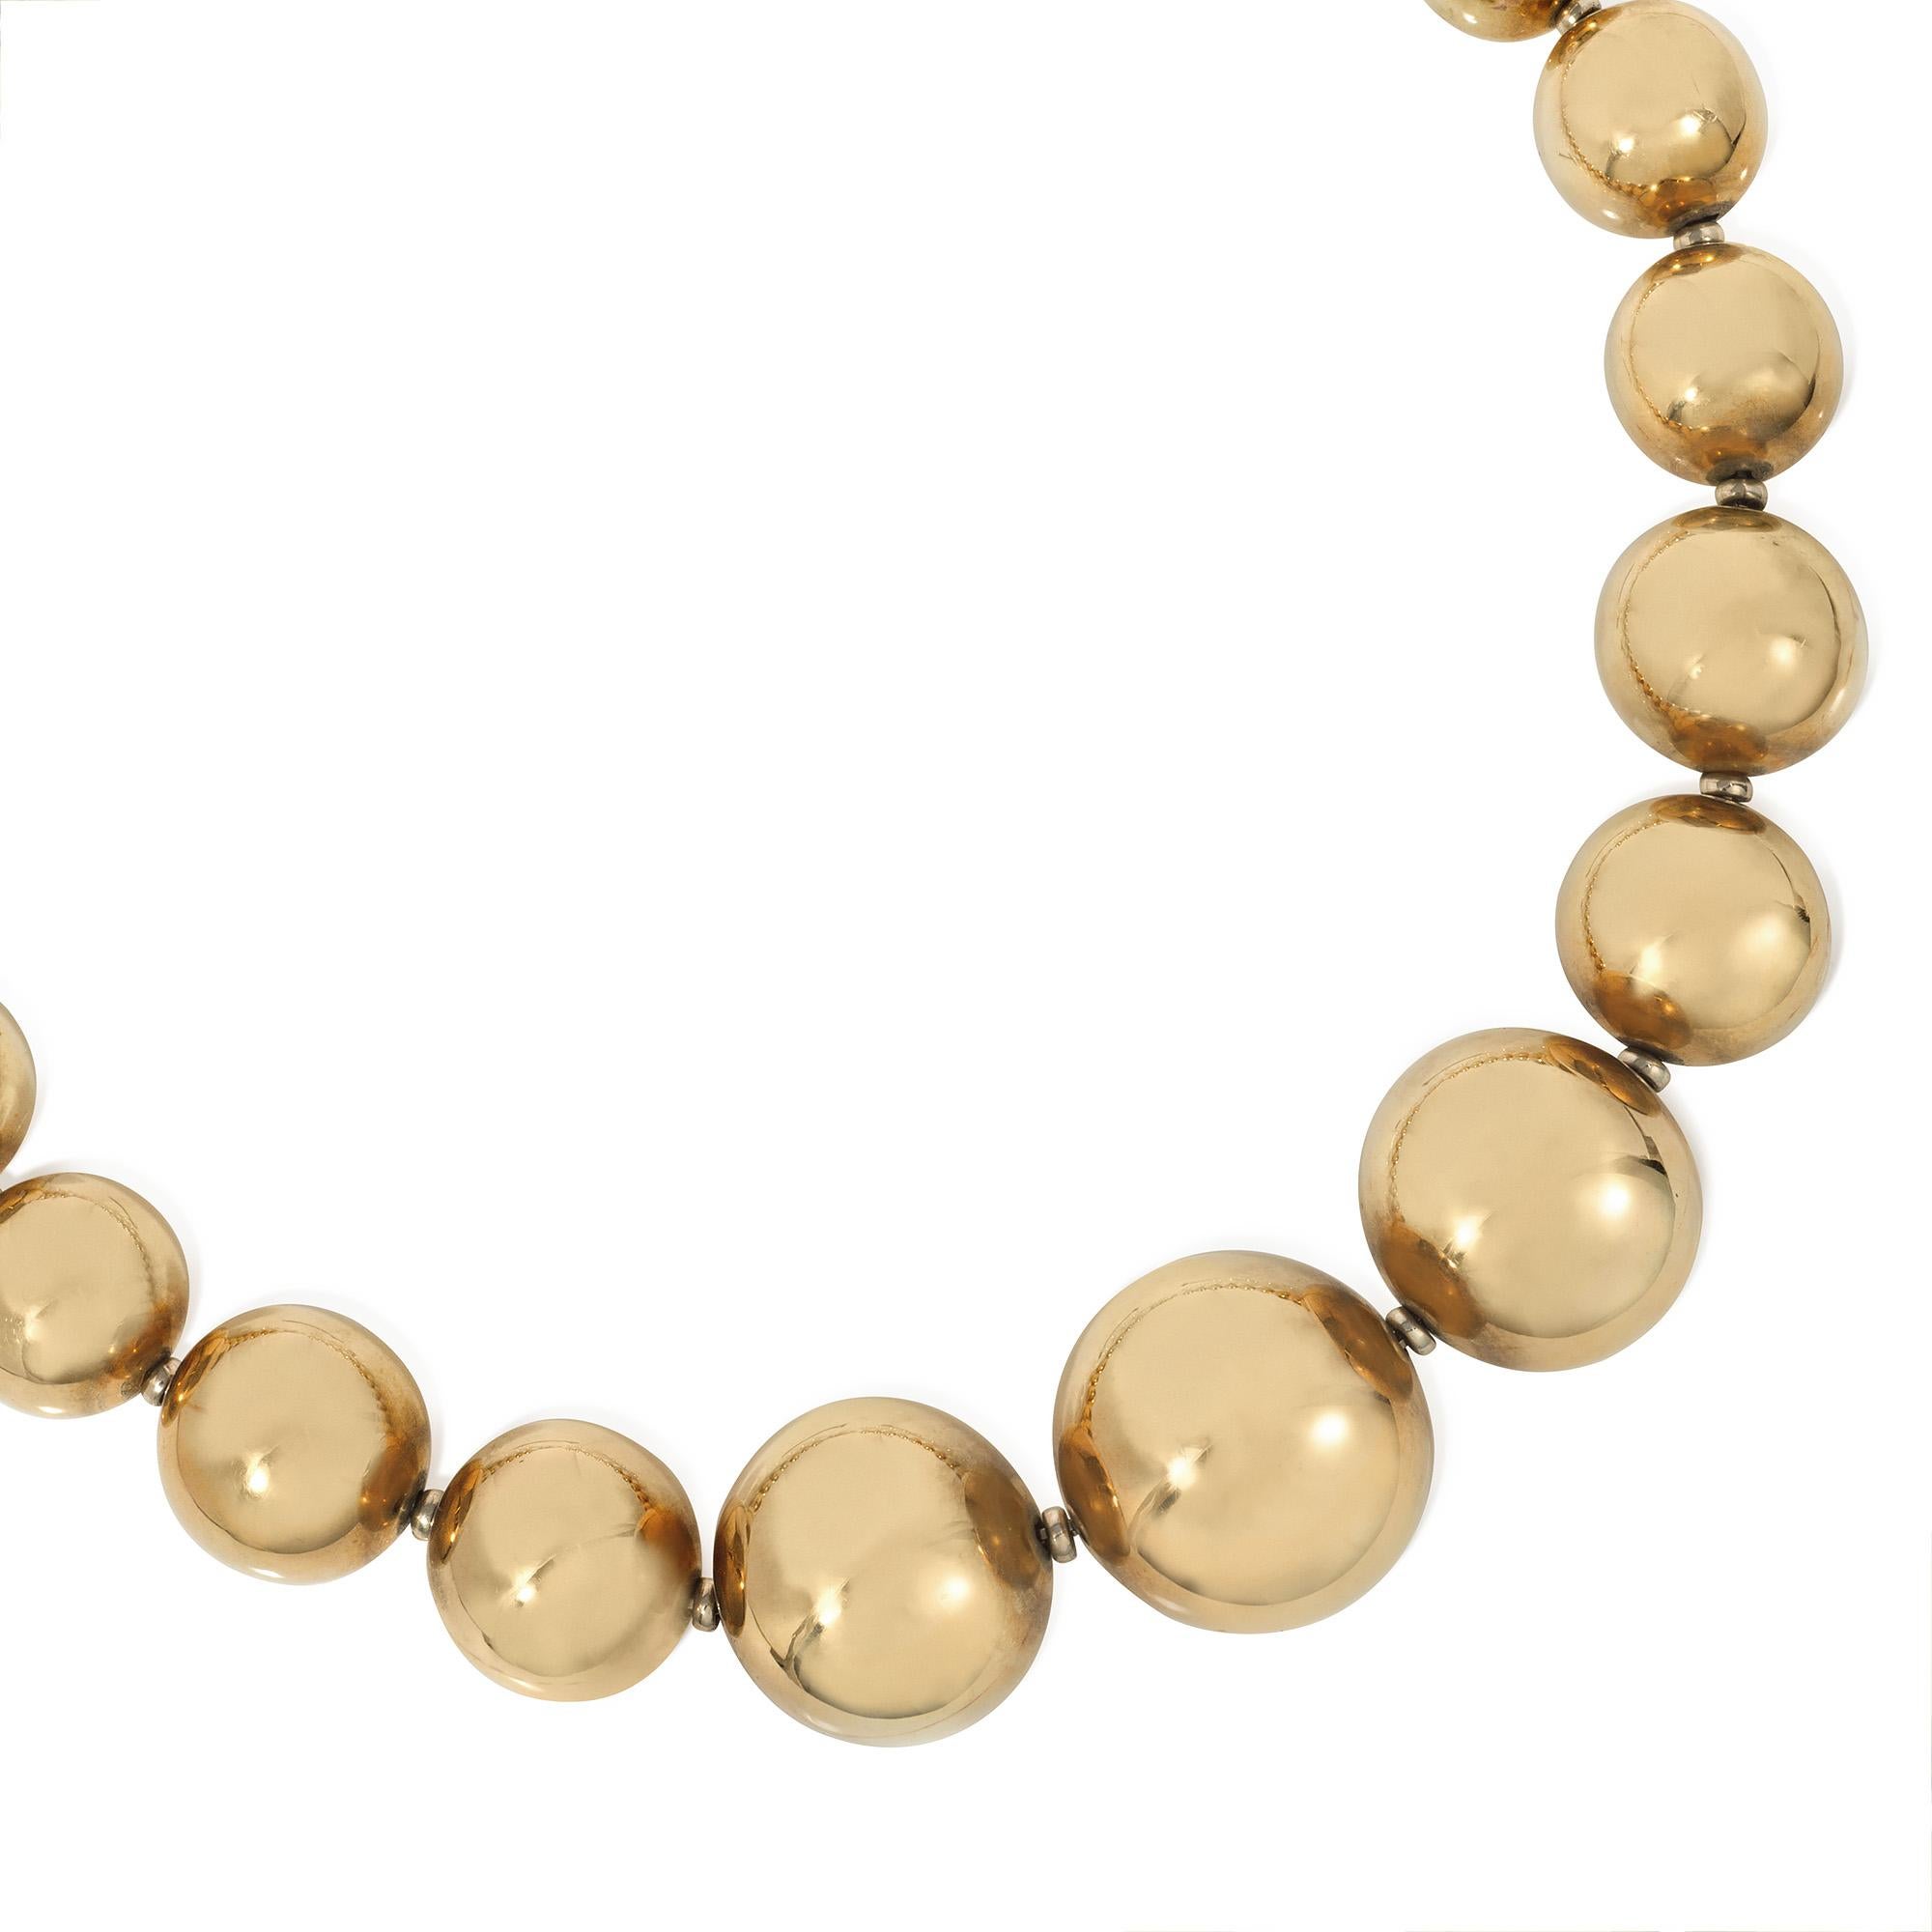 Collier en or composé de 23 perles d'or graduées allant de 10 mm à 24 mm, en argent sterling et 14k. Italie.

* Inclut une lettre d'authenticité à des fins d'assurance
* N'hésitez pas à demander des photos de détails spécifiques ou du collier sur un